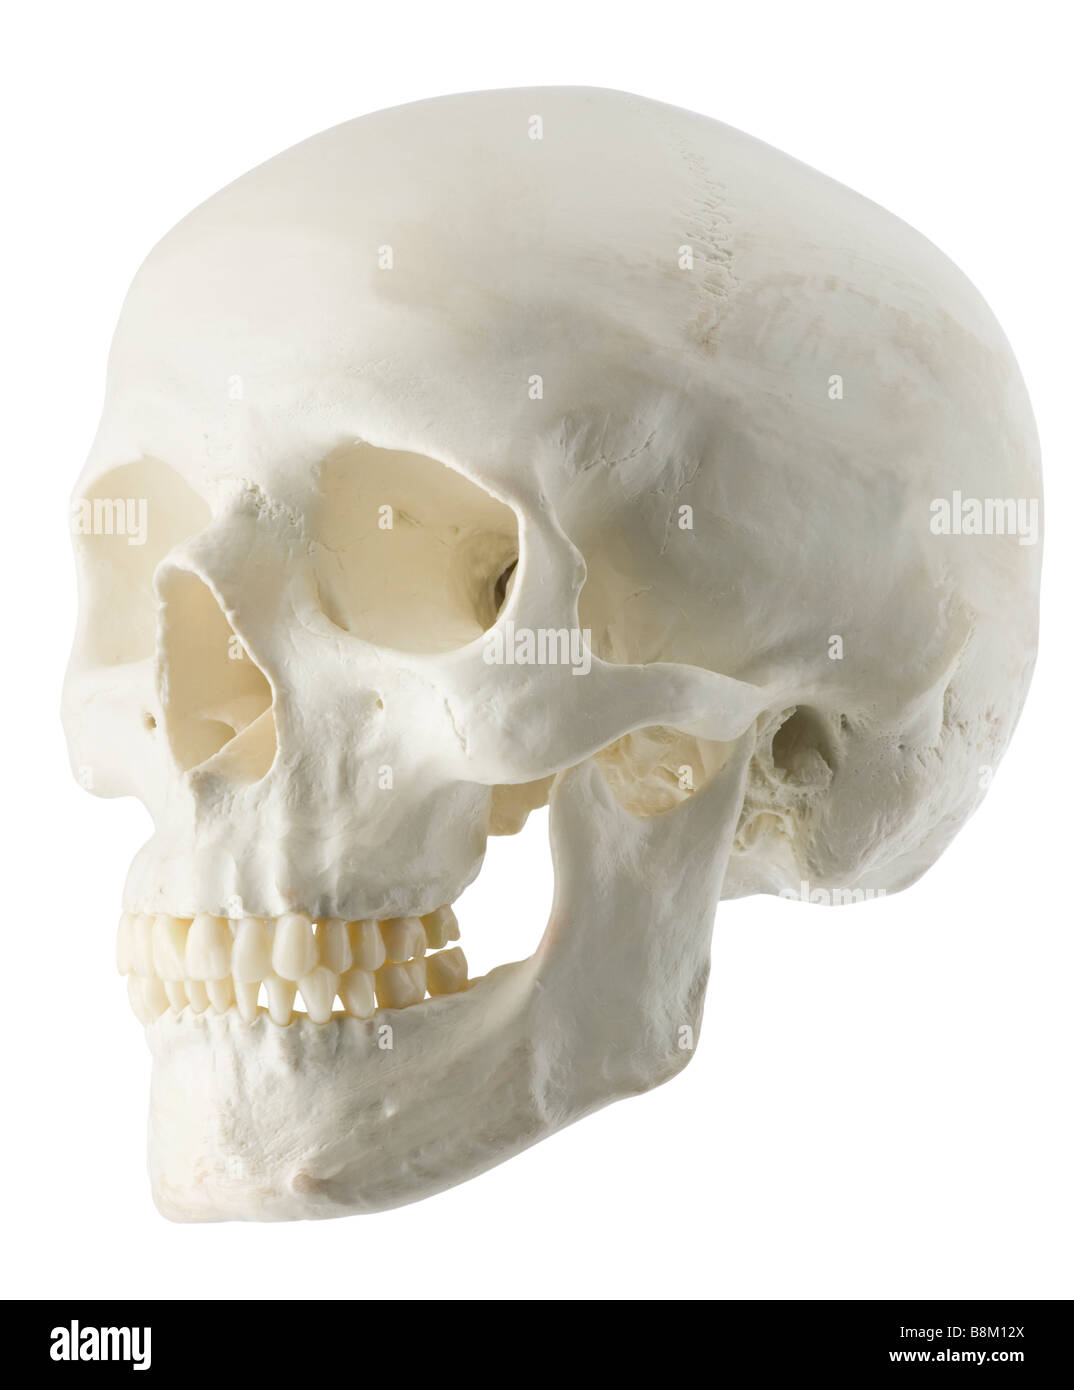 Cráneo,humano,jefe,Vista lateral,dientes,sockets,investigación,,patología forense Foto de stock